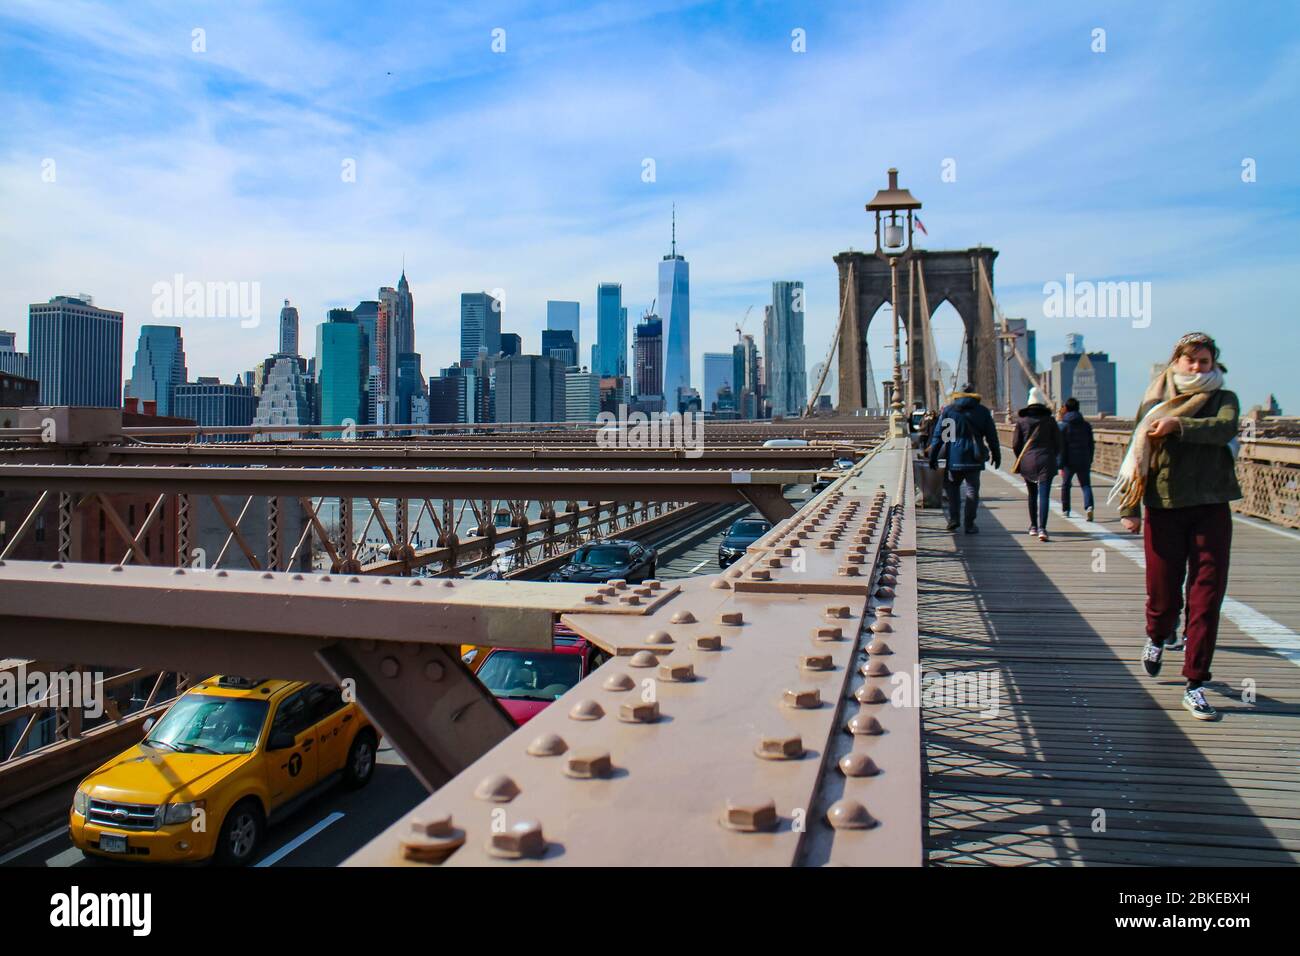 Traversée du pont de Brooklyn avec visite touristique et vue sur les gratte-ciel de Lower Manhattan avec le One World Trade Center. Banque D'Images